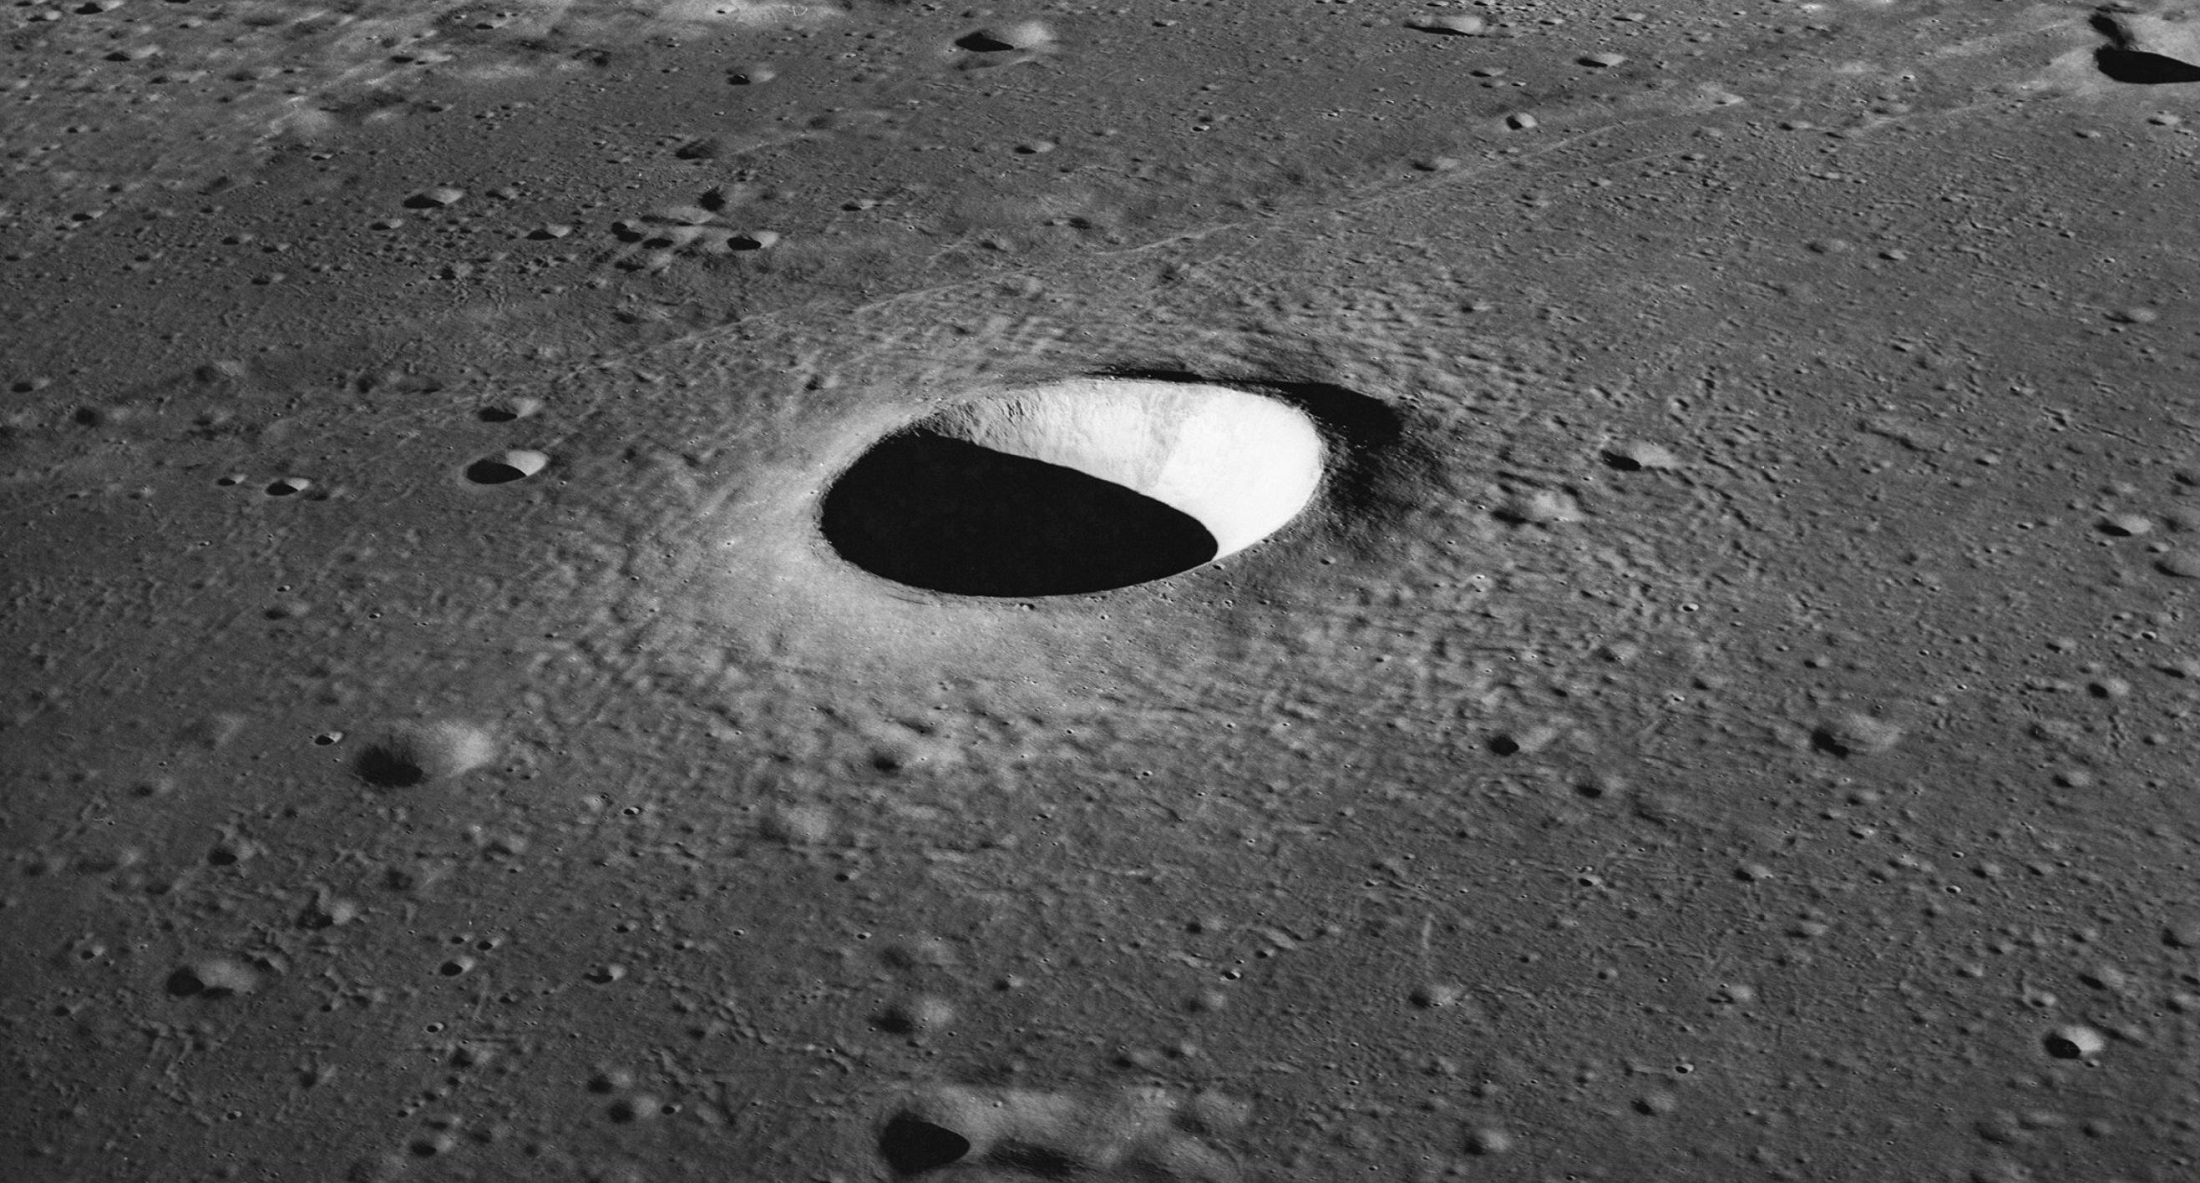 Bočni pogled na krater Moltke snimljen iz Apolla 10. Zasluge: Javna domena